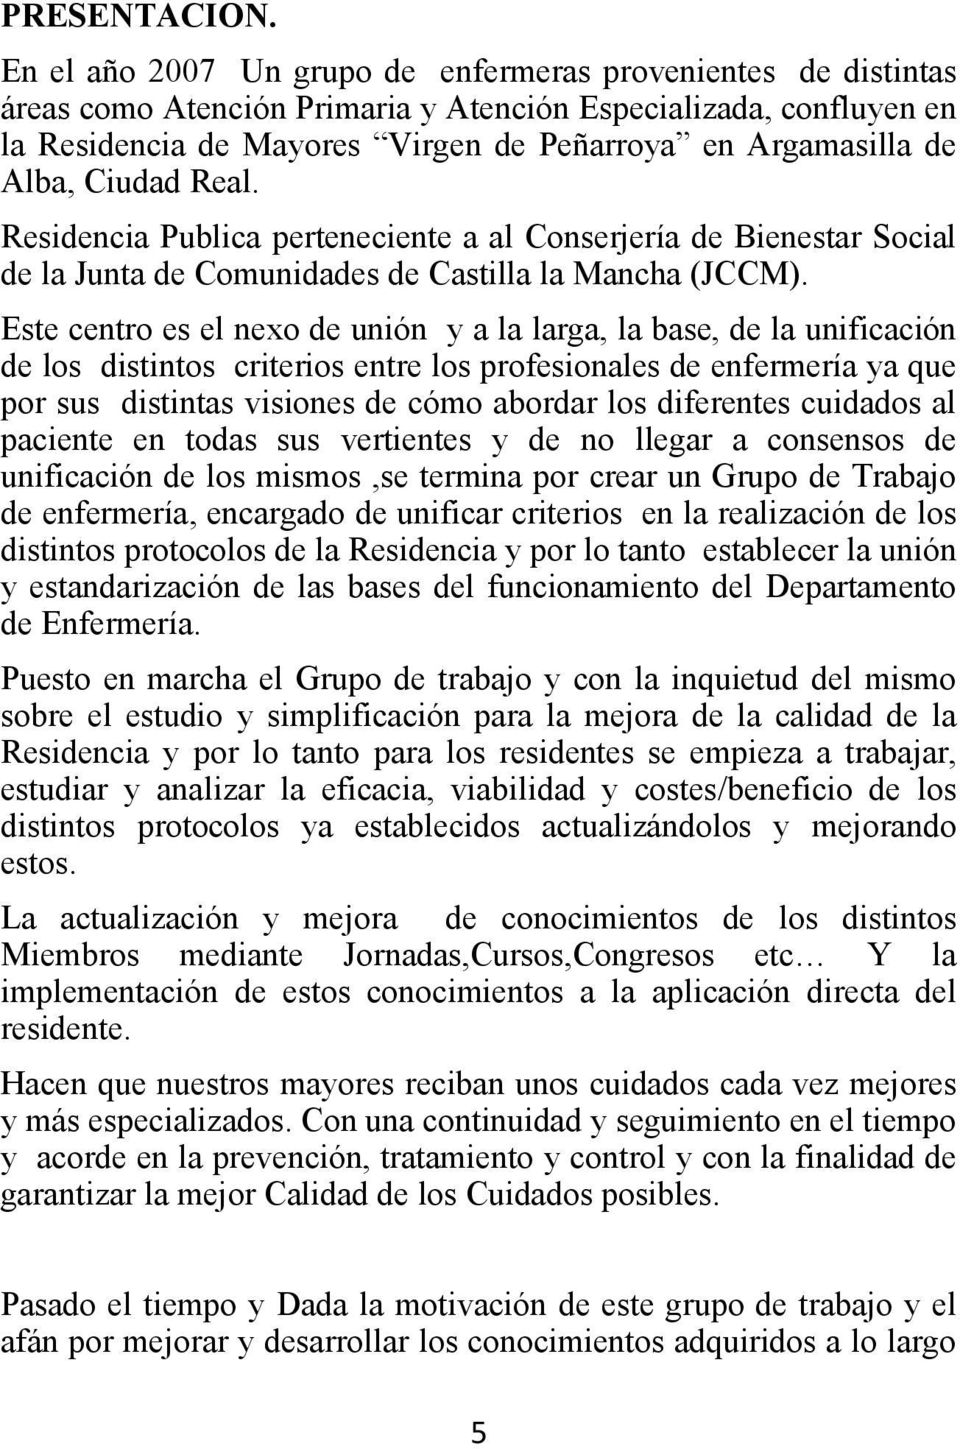 Alba, Ciudad Real. Residencia Publica perteneciente a al Conserjería de Bienestar Social de la Junta de Comunidades de Castilla la Mancha (JCCM).